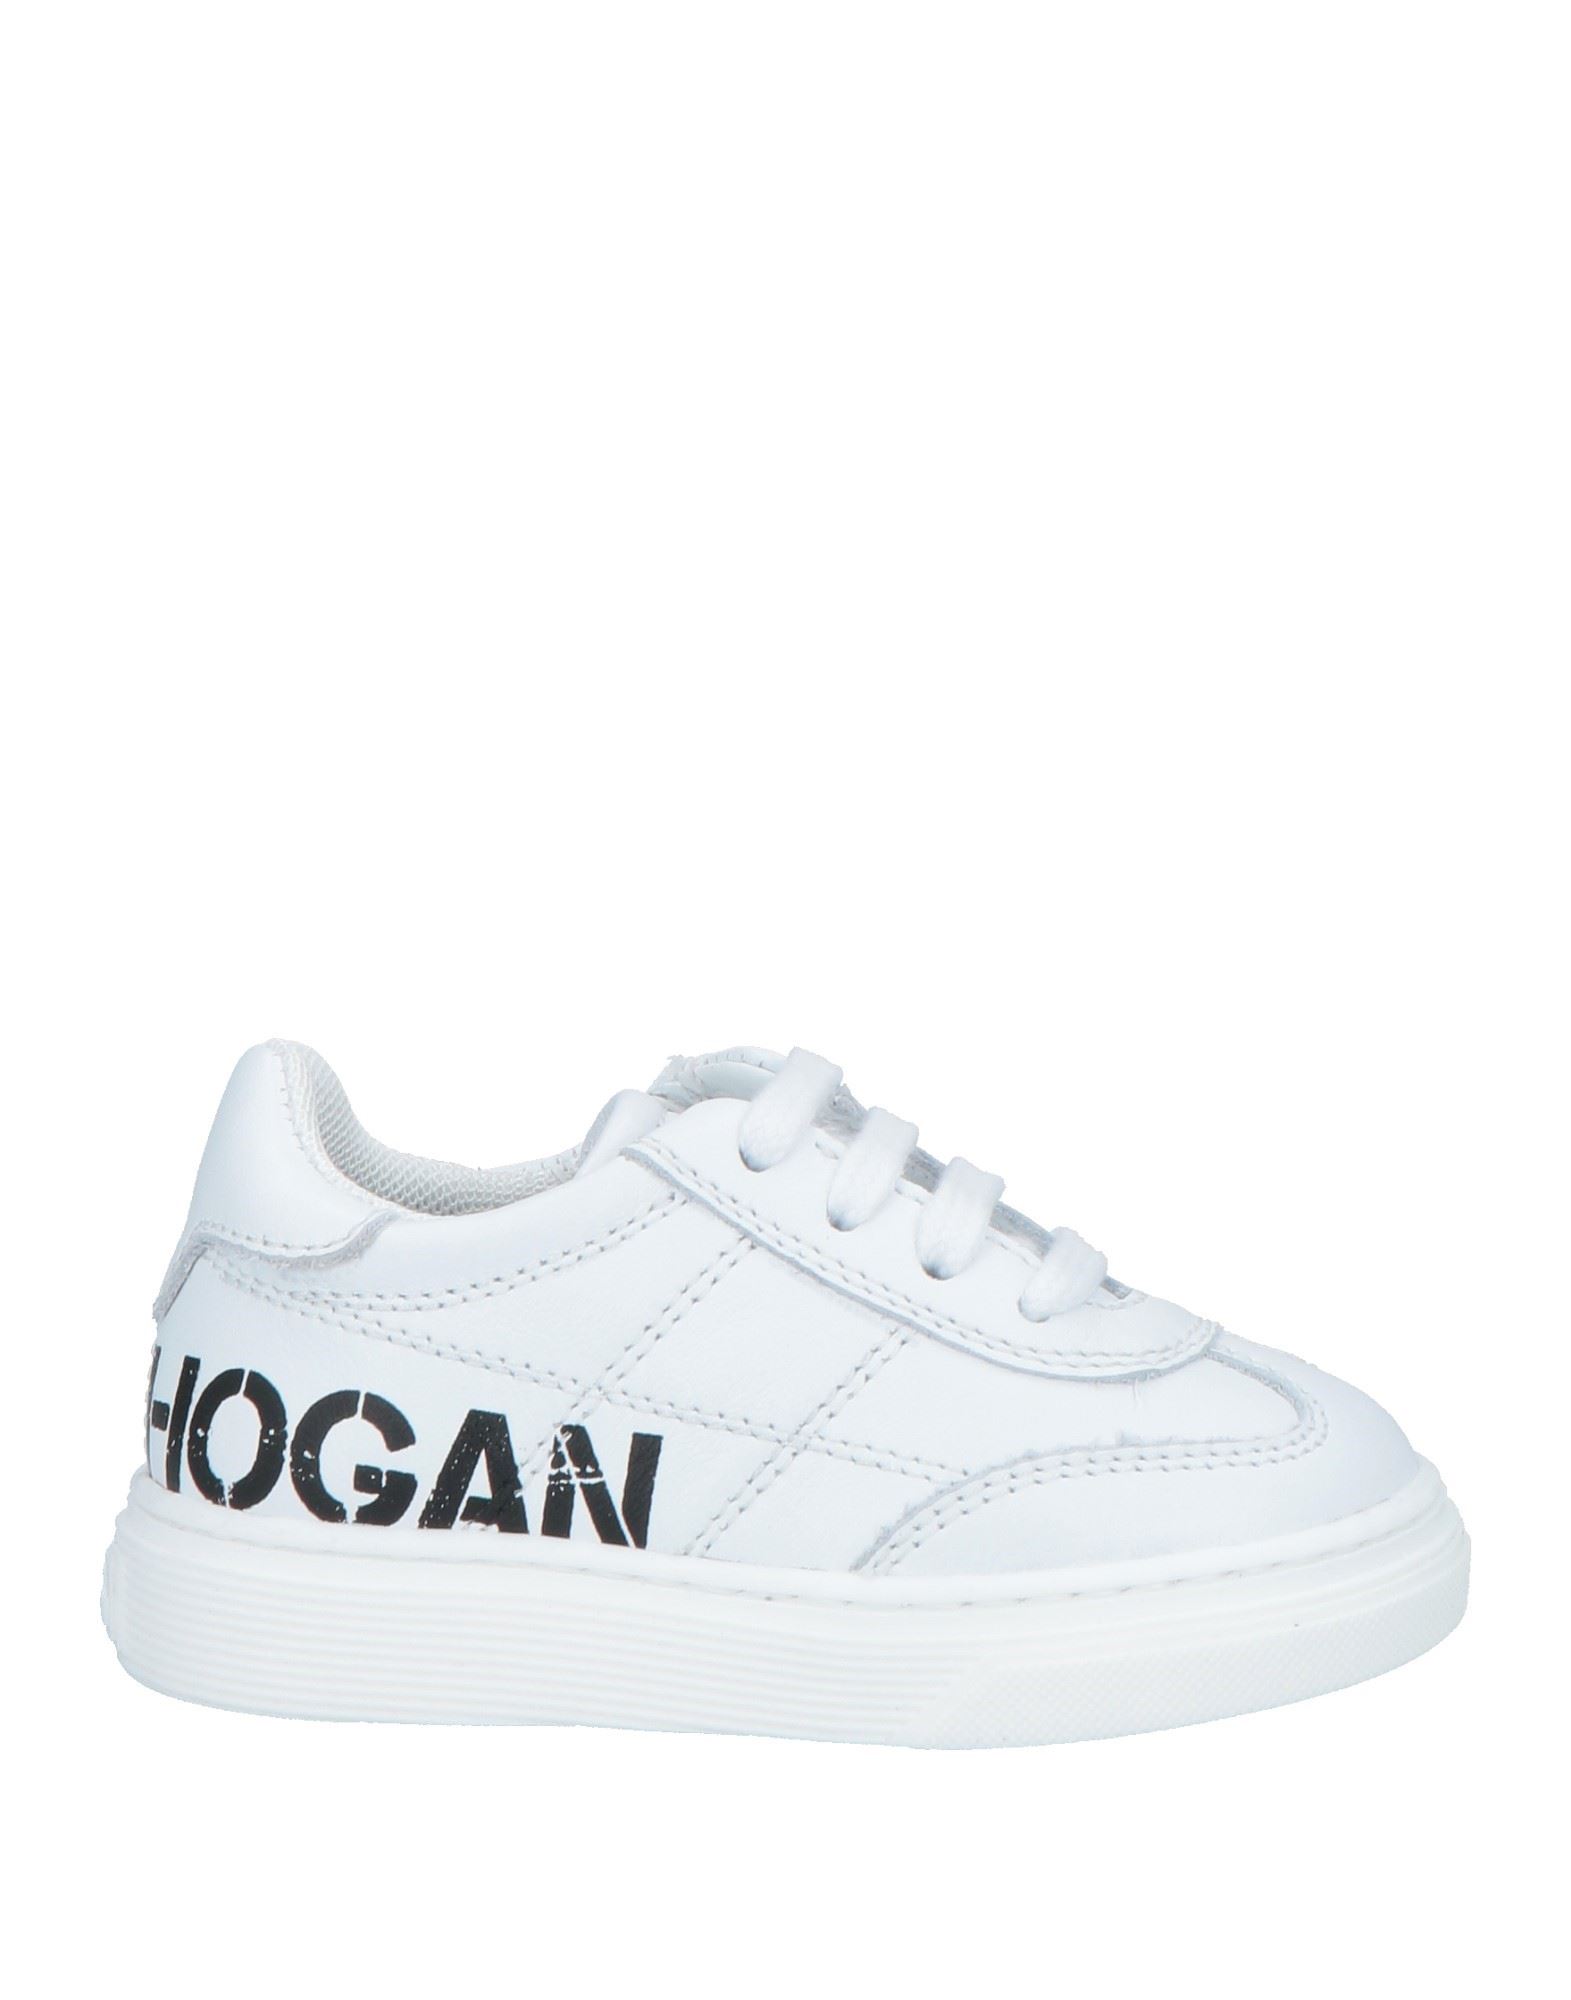 HOGAN Sneakers Kinder Weiß von HOGAN